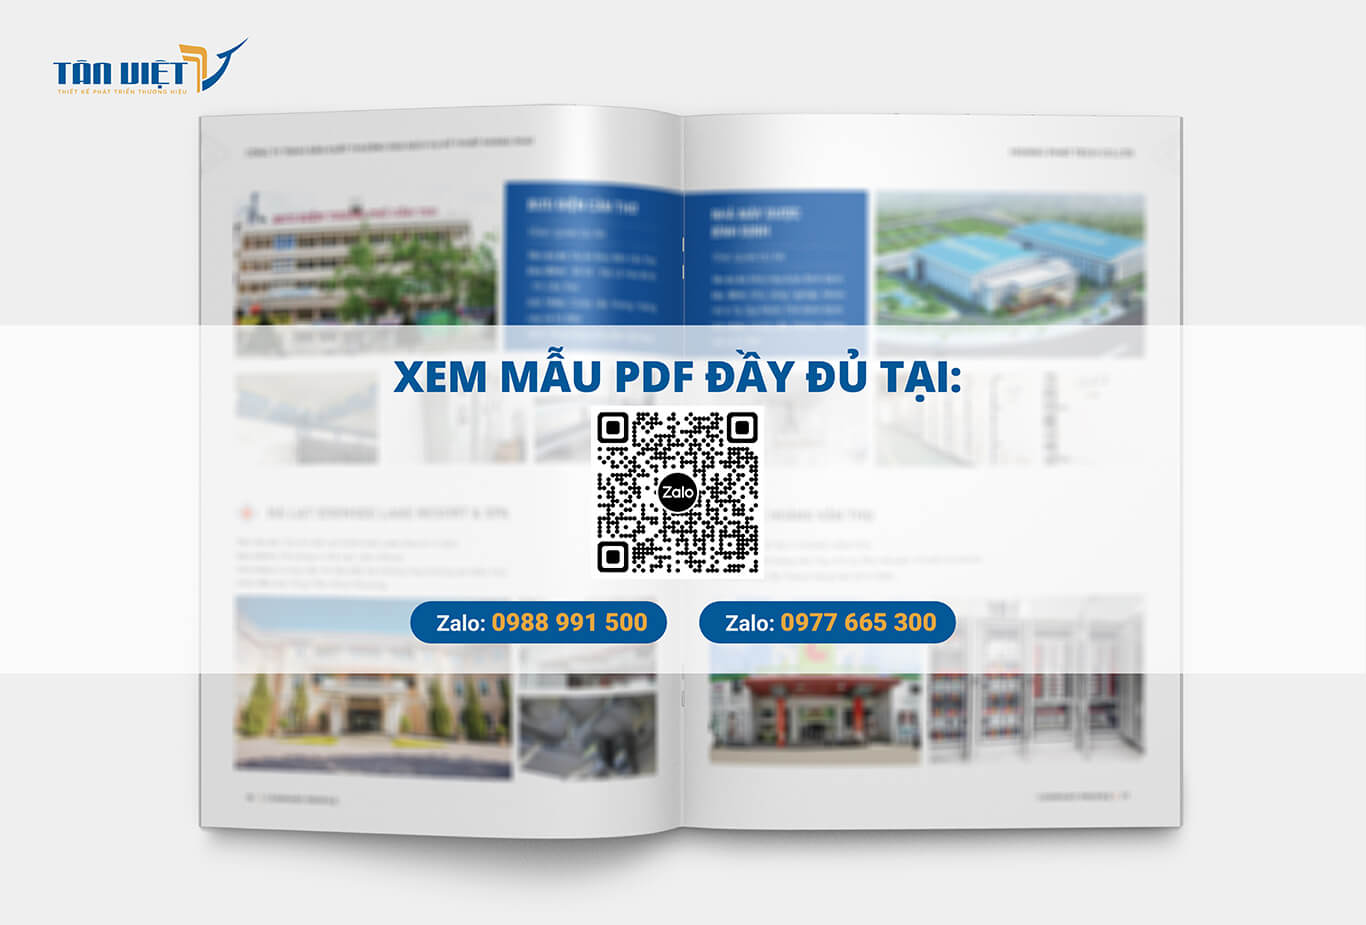 Xem mẫu PDF Profile Công ty cơ điện Hoàng Phát đầy đủ tại đây!